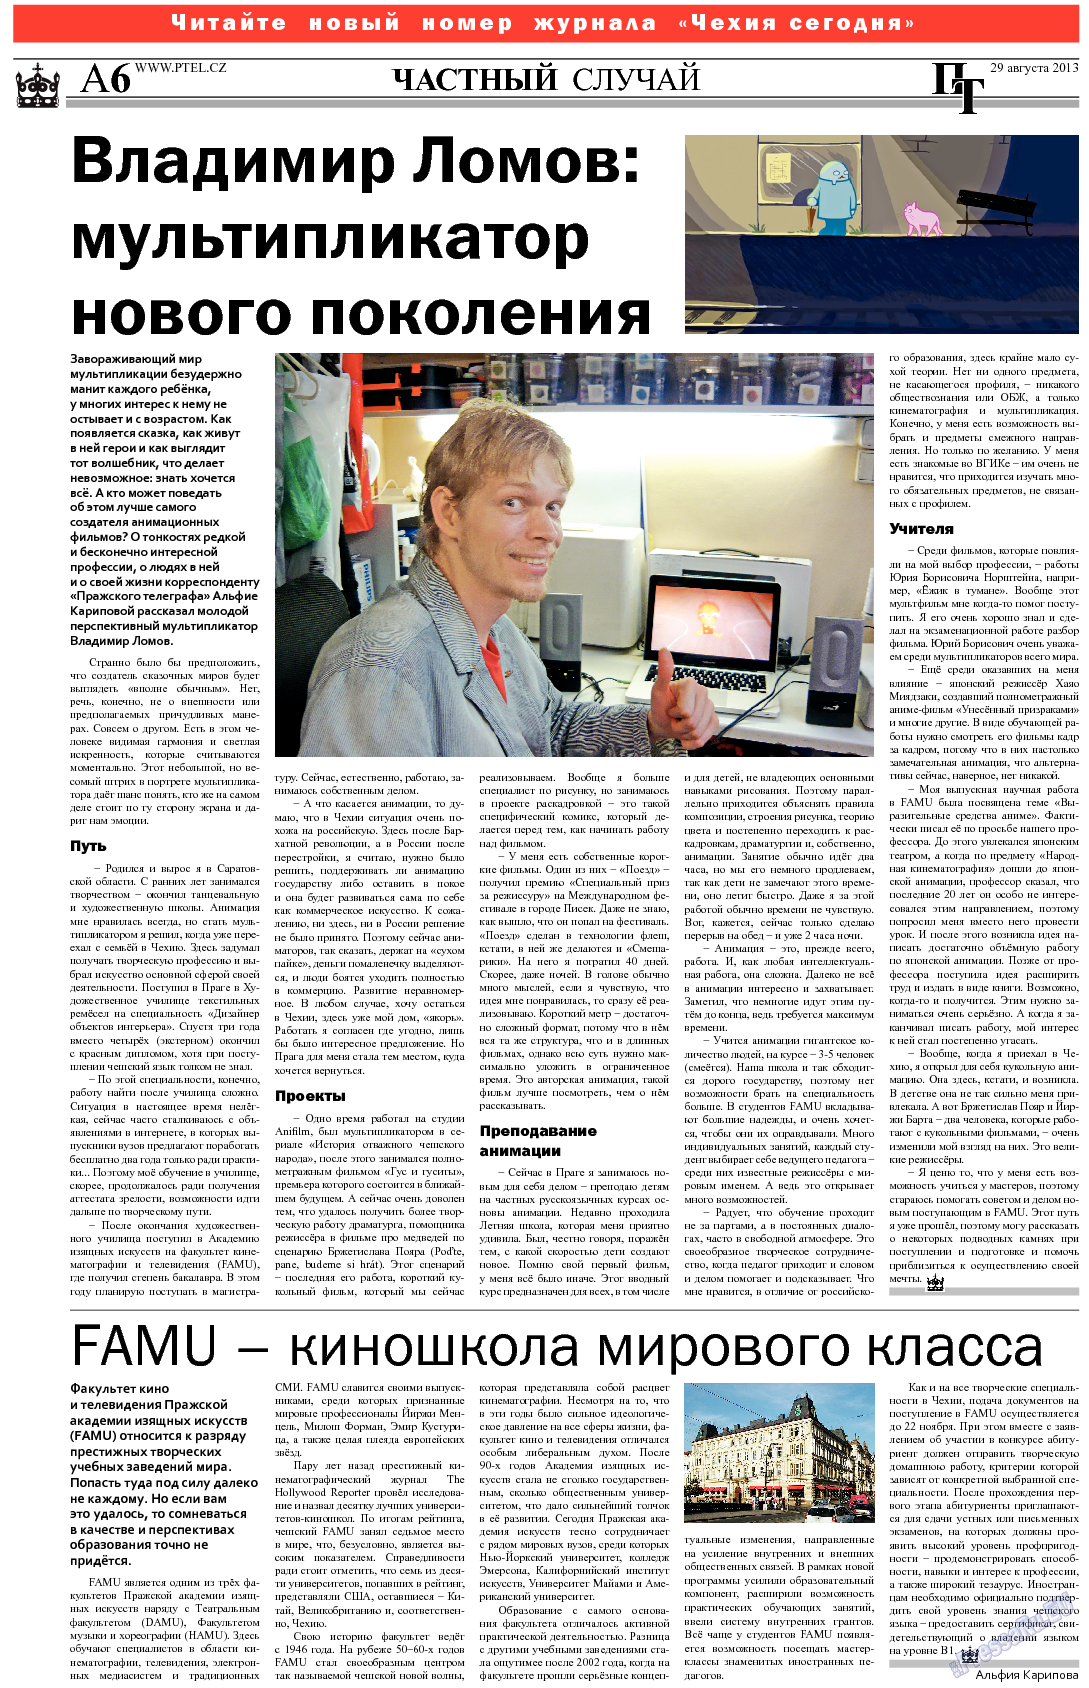 Пражский телеграф (газета). 2013 год, номер 34, стр. 6